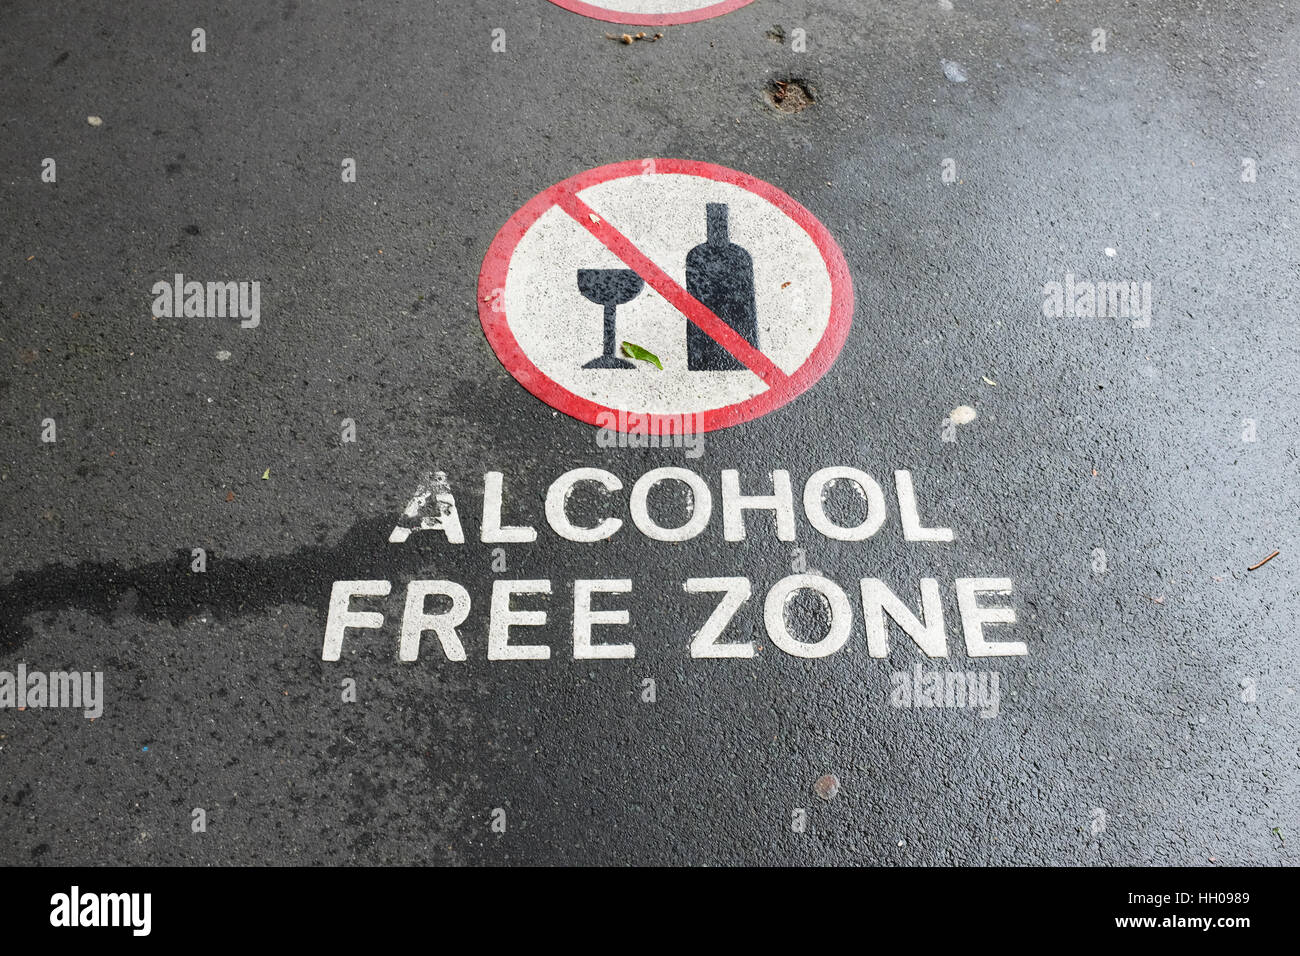 Un cartel en una ruta que indica una zona libre de alcohol. Foto de stock